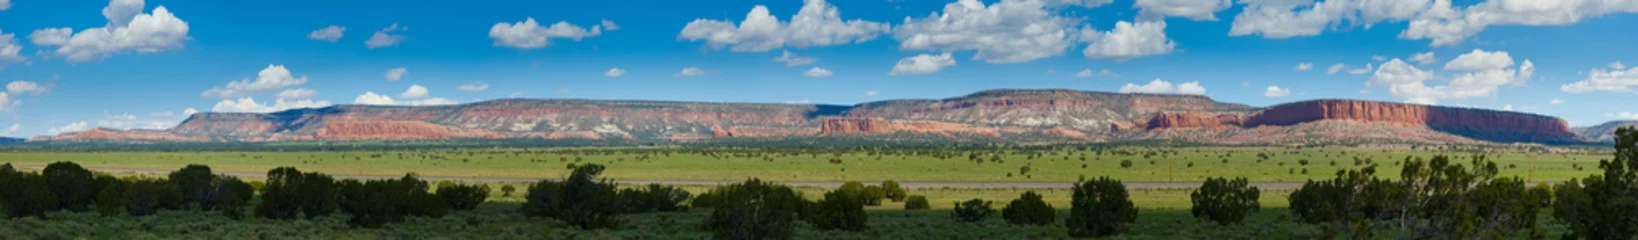 Poster Rode bergen van Arizona - panorama © gijones